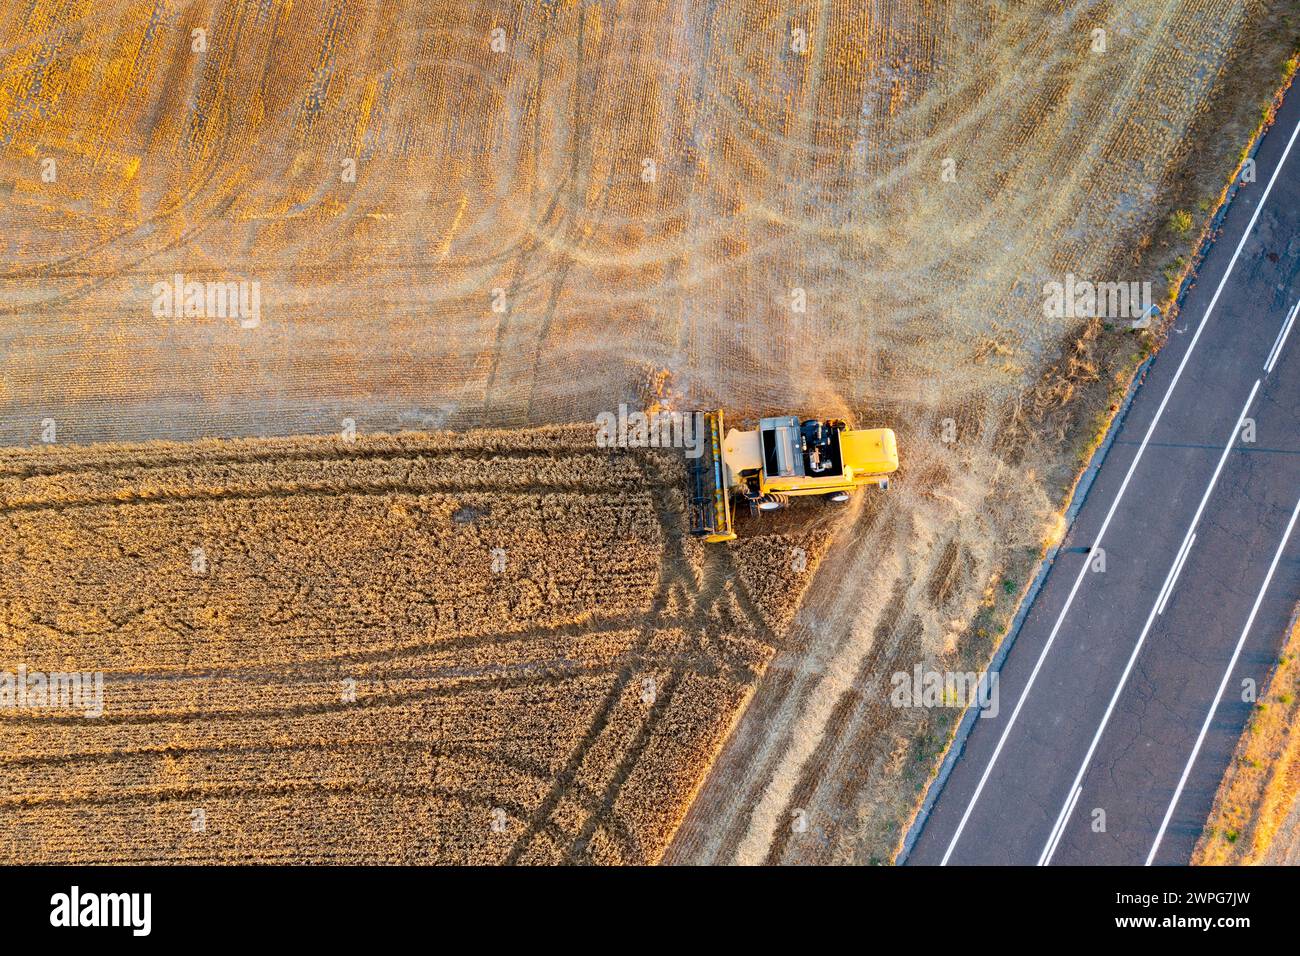 Vista aerea della mietitrebbia per la raccolta del grano. Foto Stock